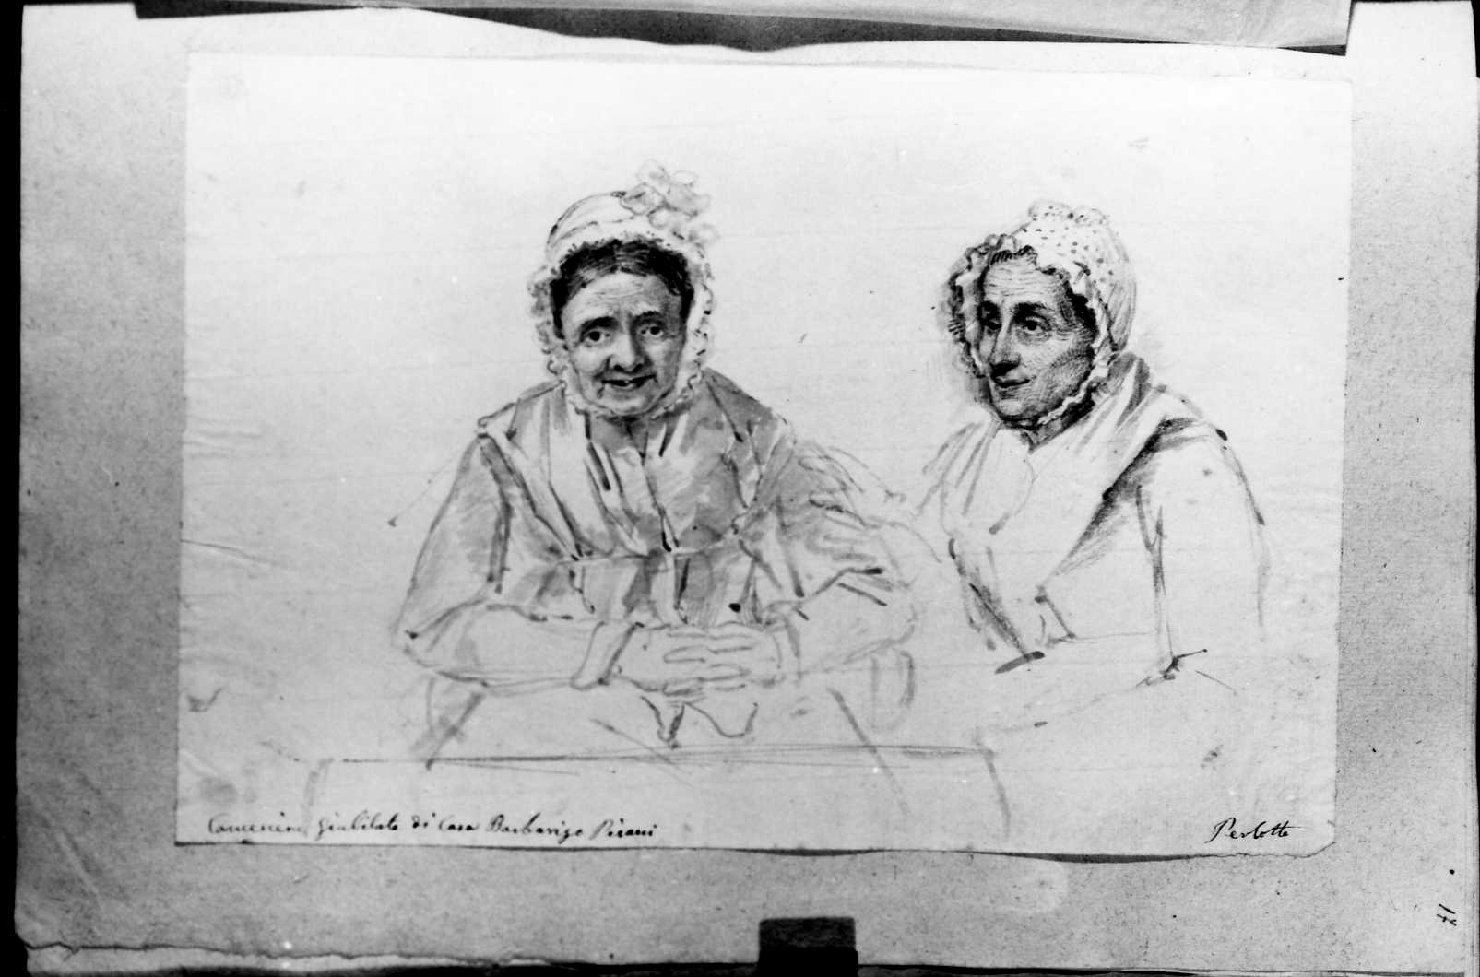 Cameriere giubilate di casa Barbarigo Pisani, ritratto di donne (disegno, serie) di Perlotto Tito Catone (sec. XIX)